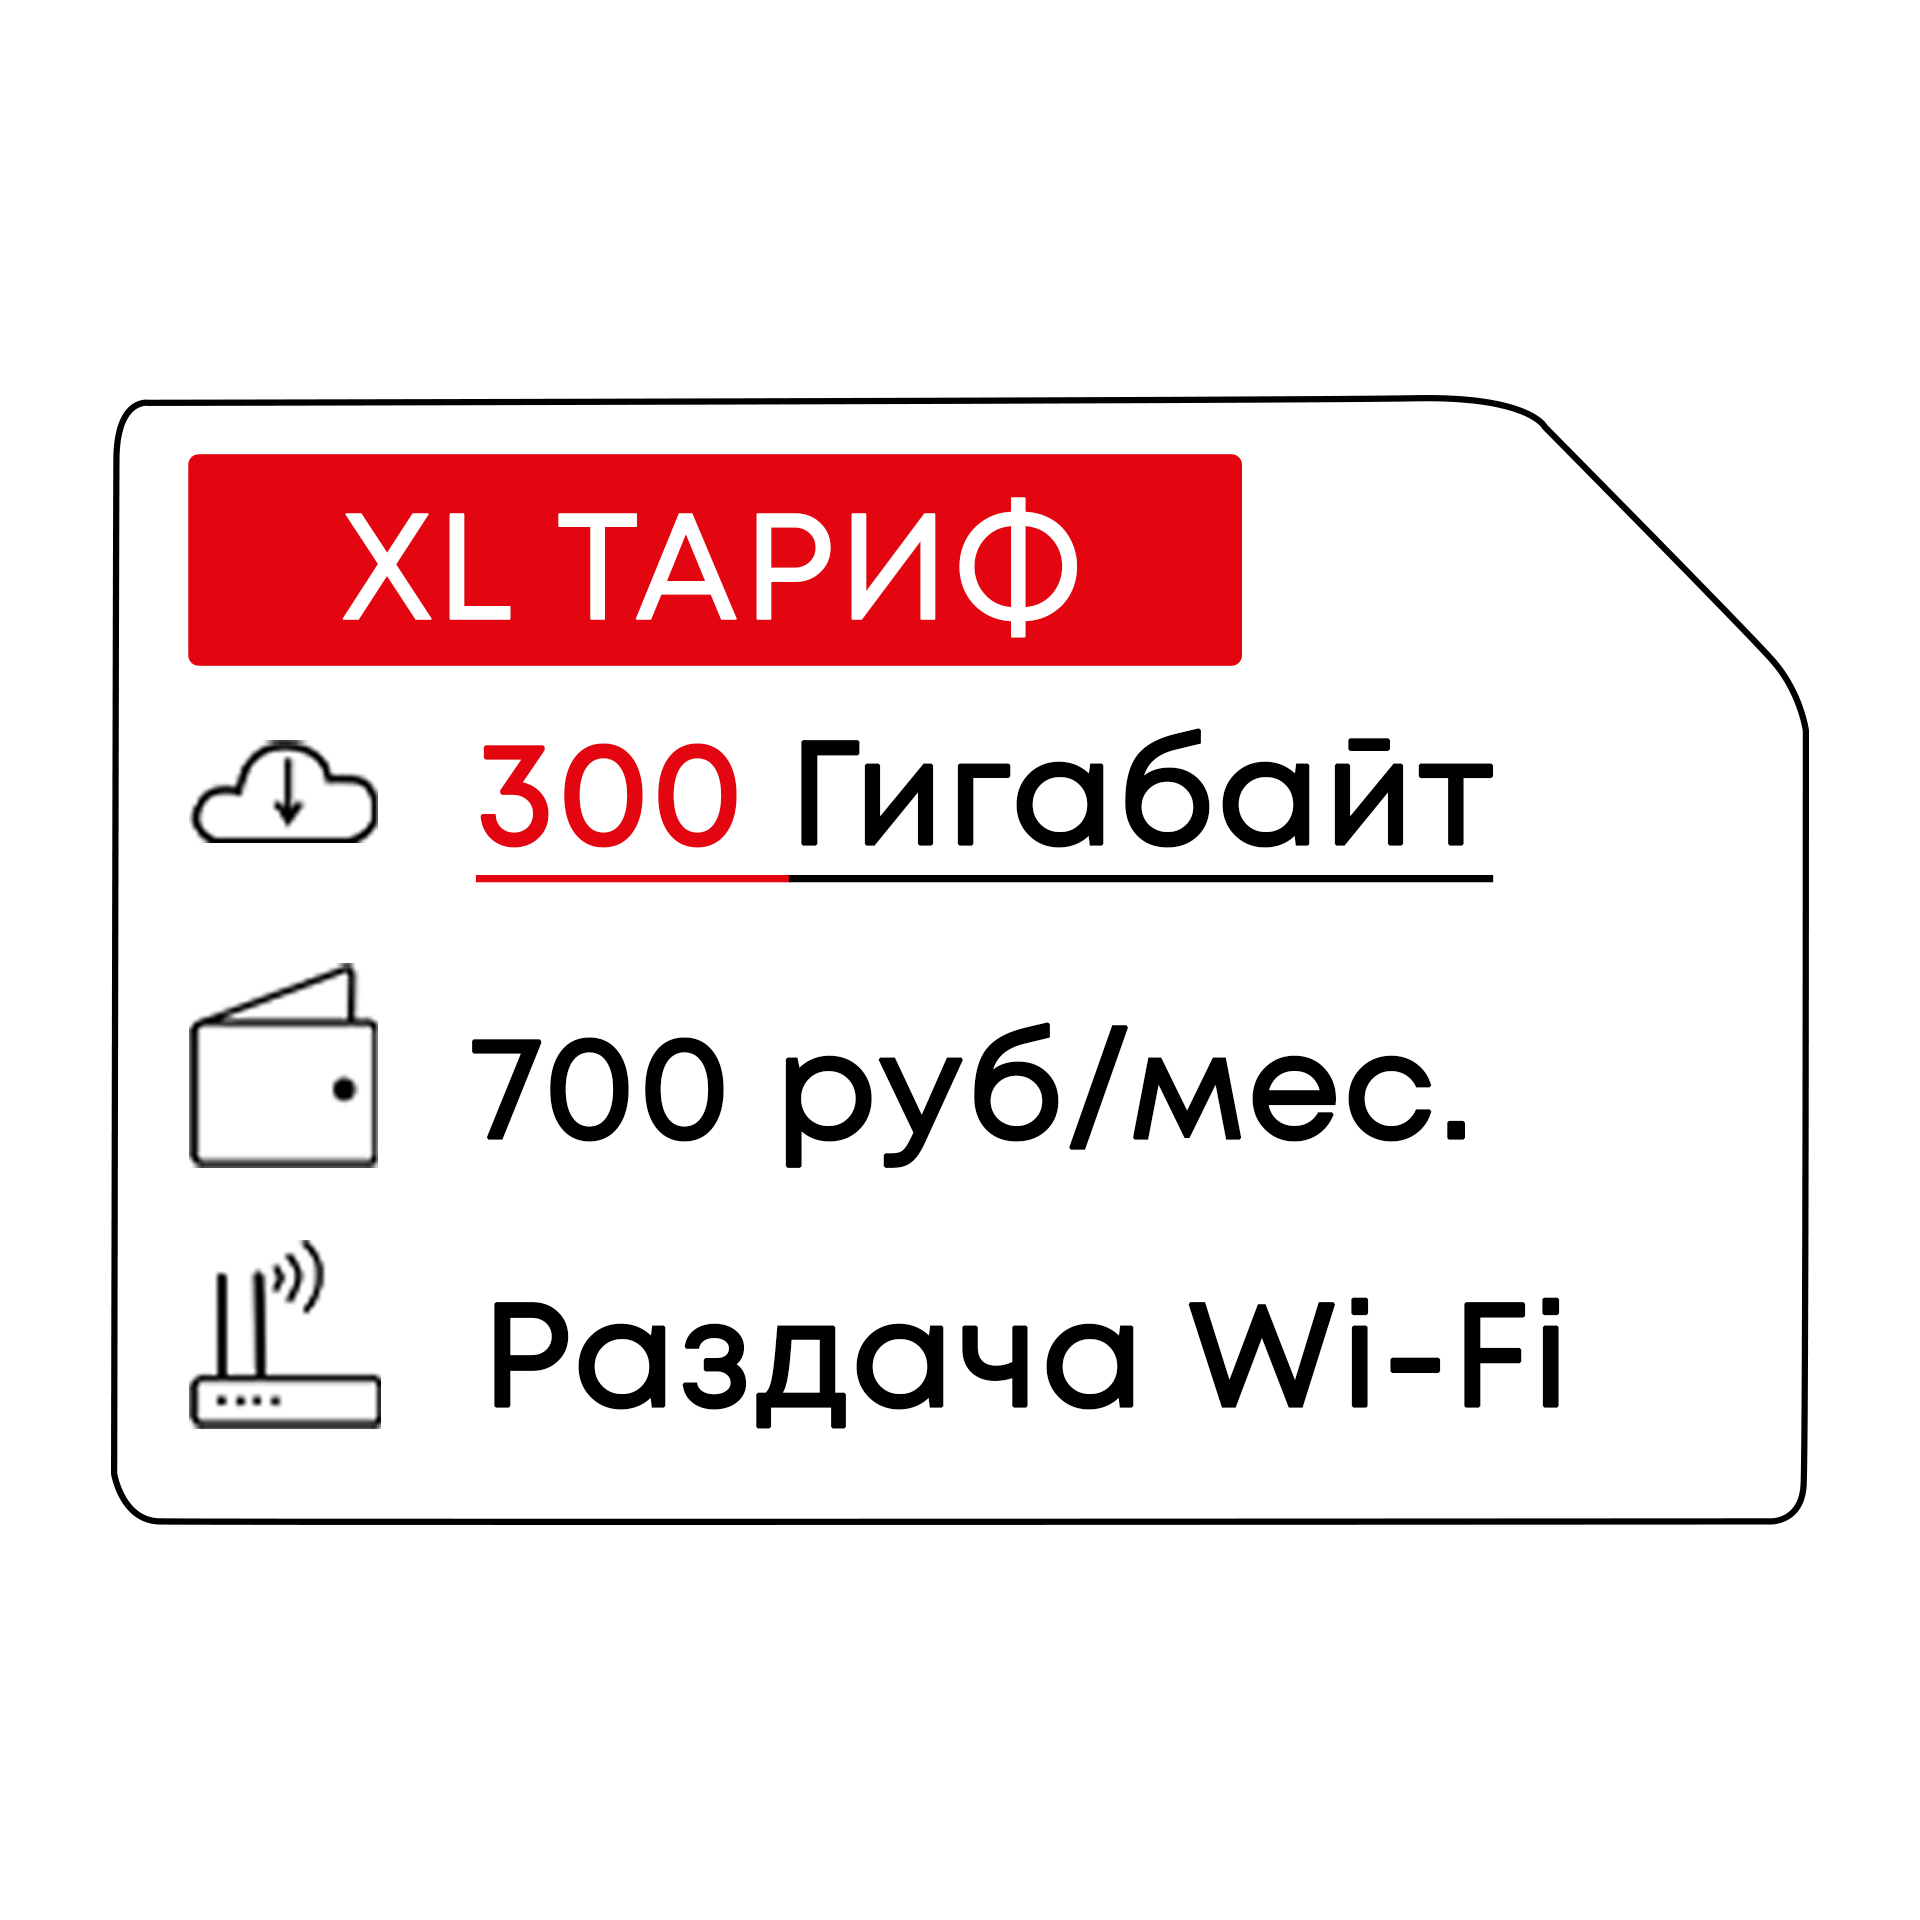 4G B3 Модем с Wi-Fi + МТС700